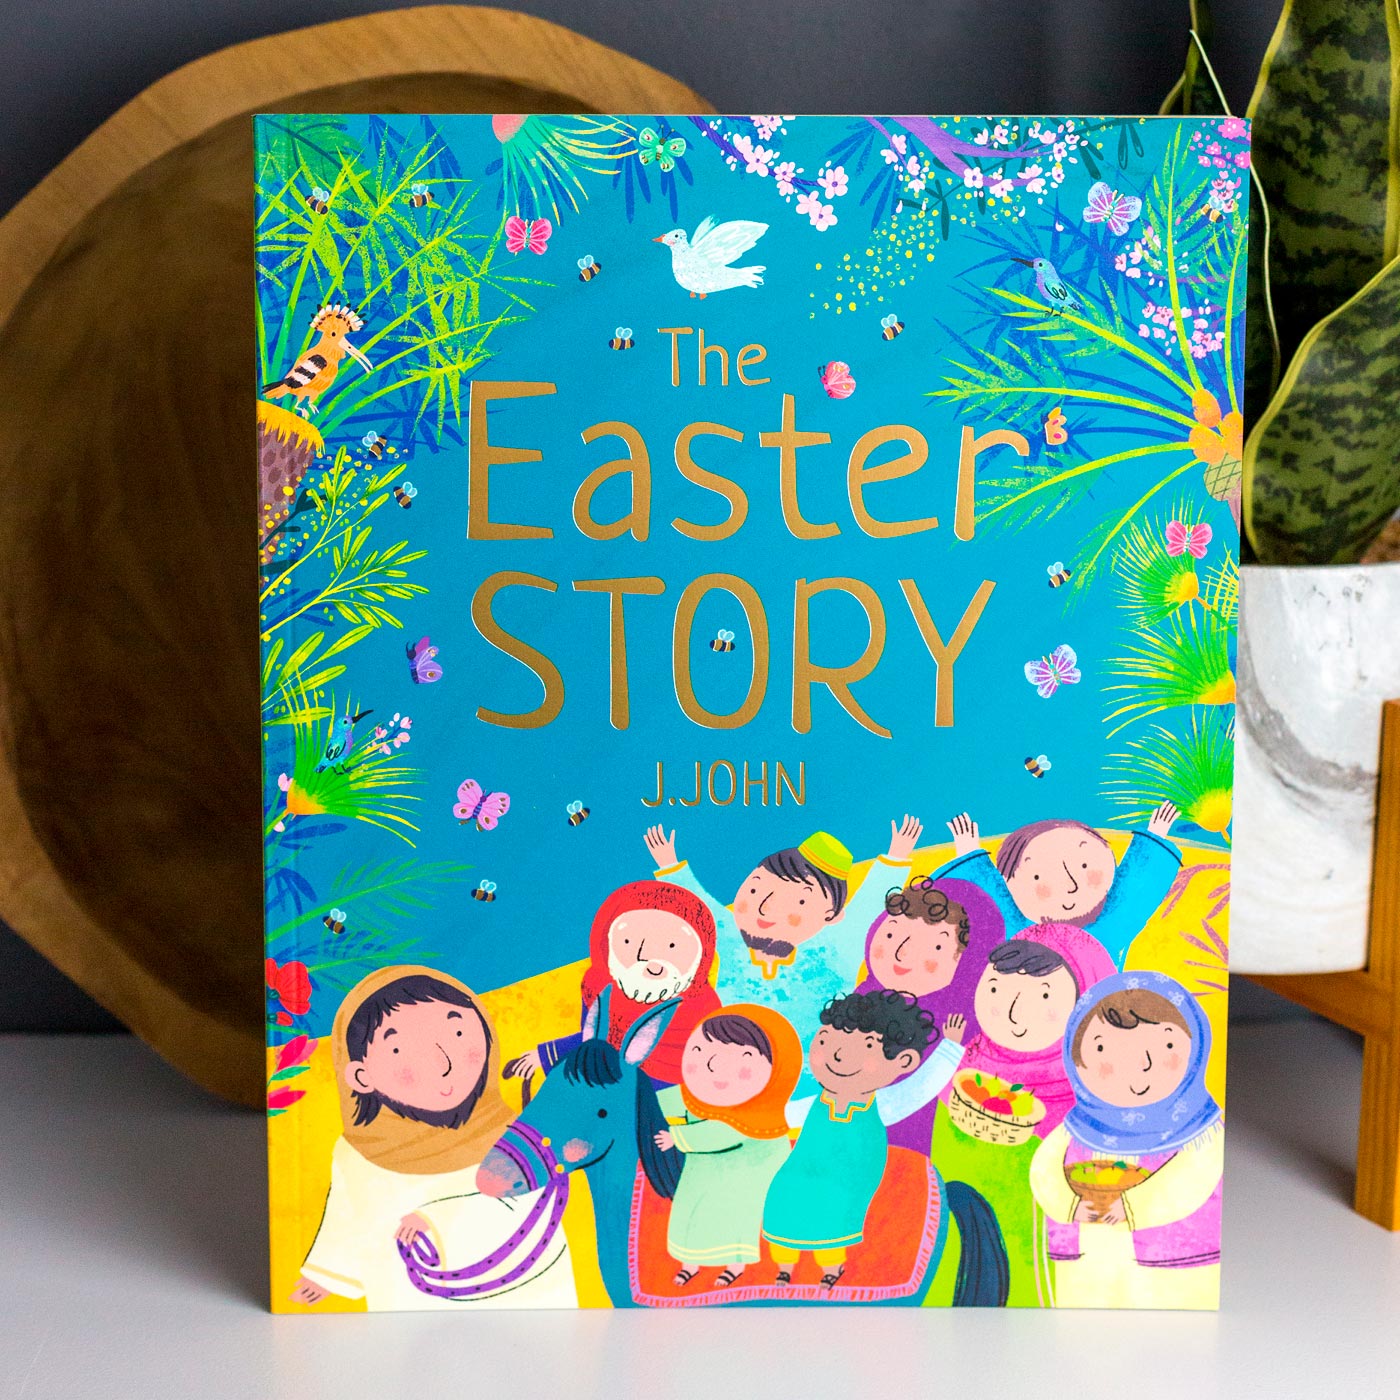 The Easter Story - J John